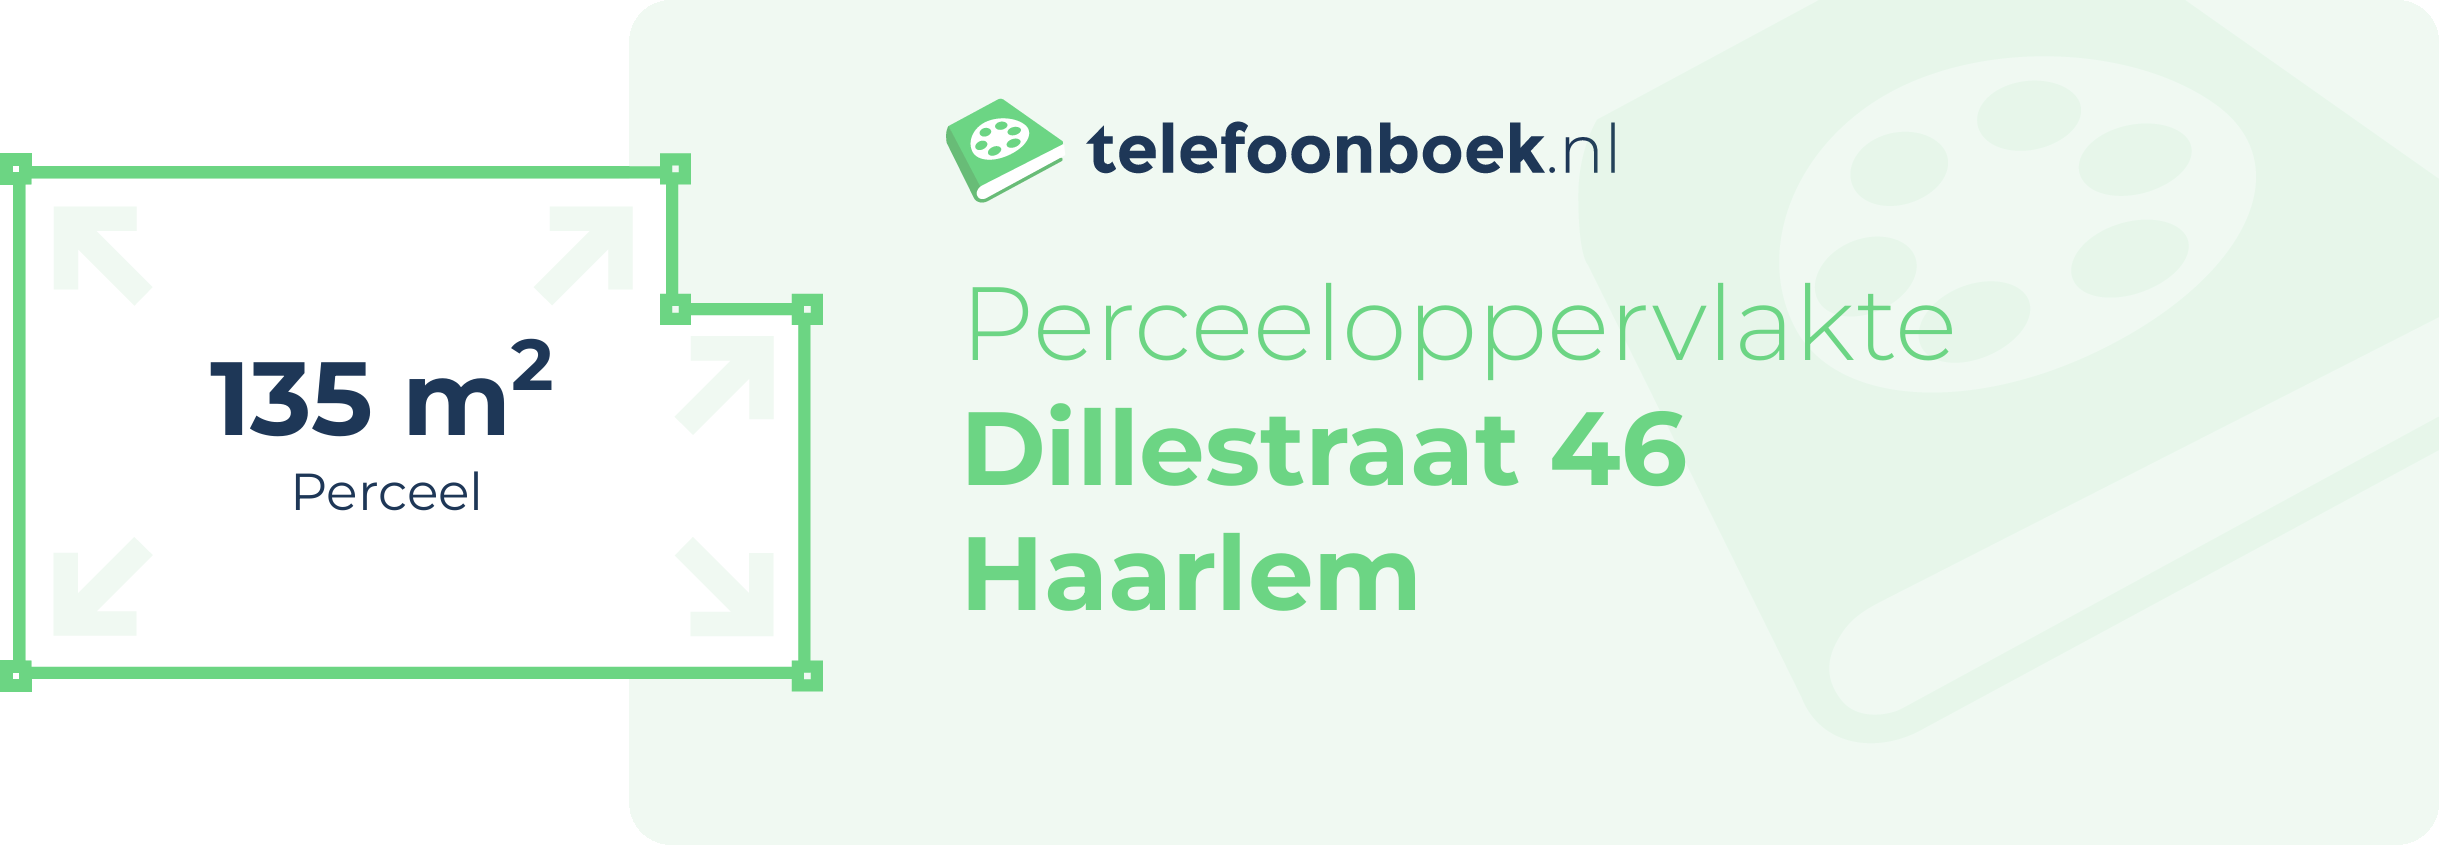 Perceeloppervlakte Dillestraat 46 Haarlem